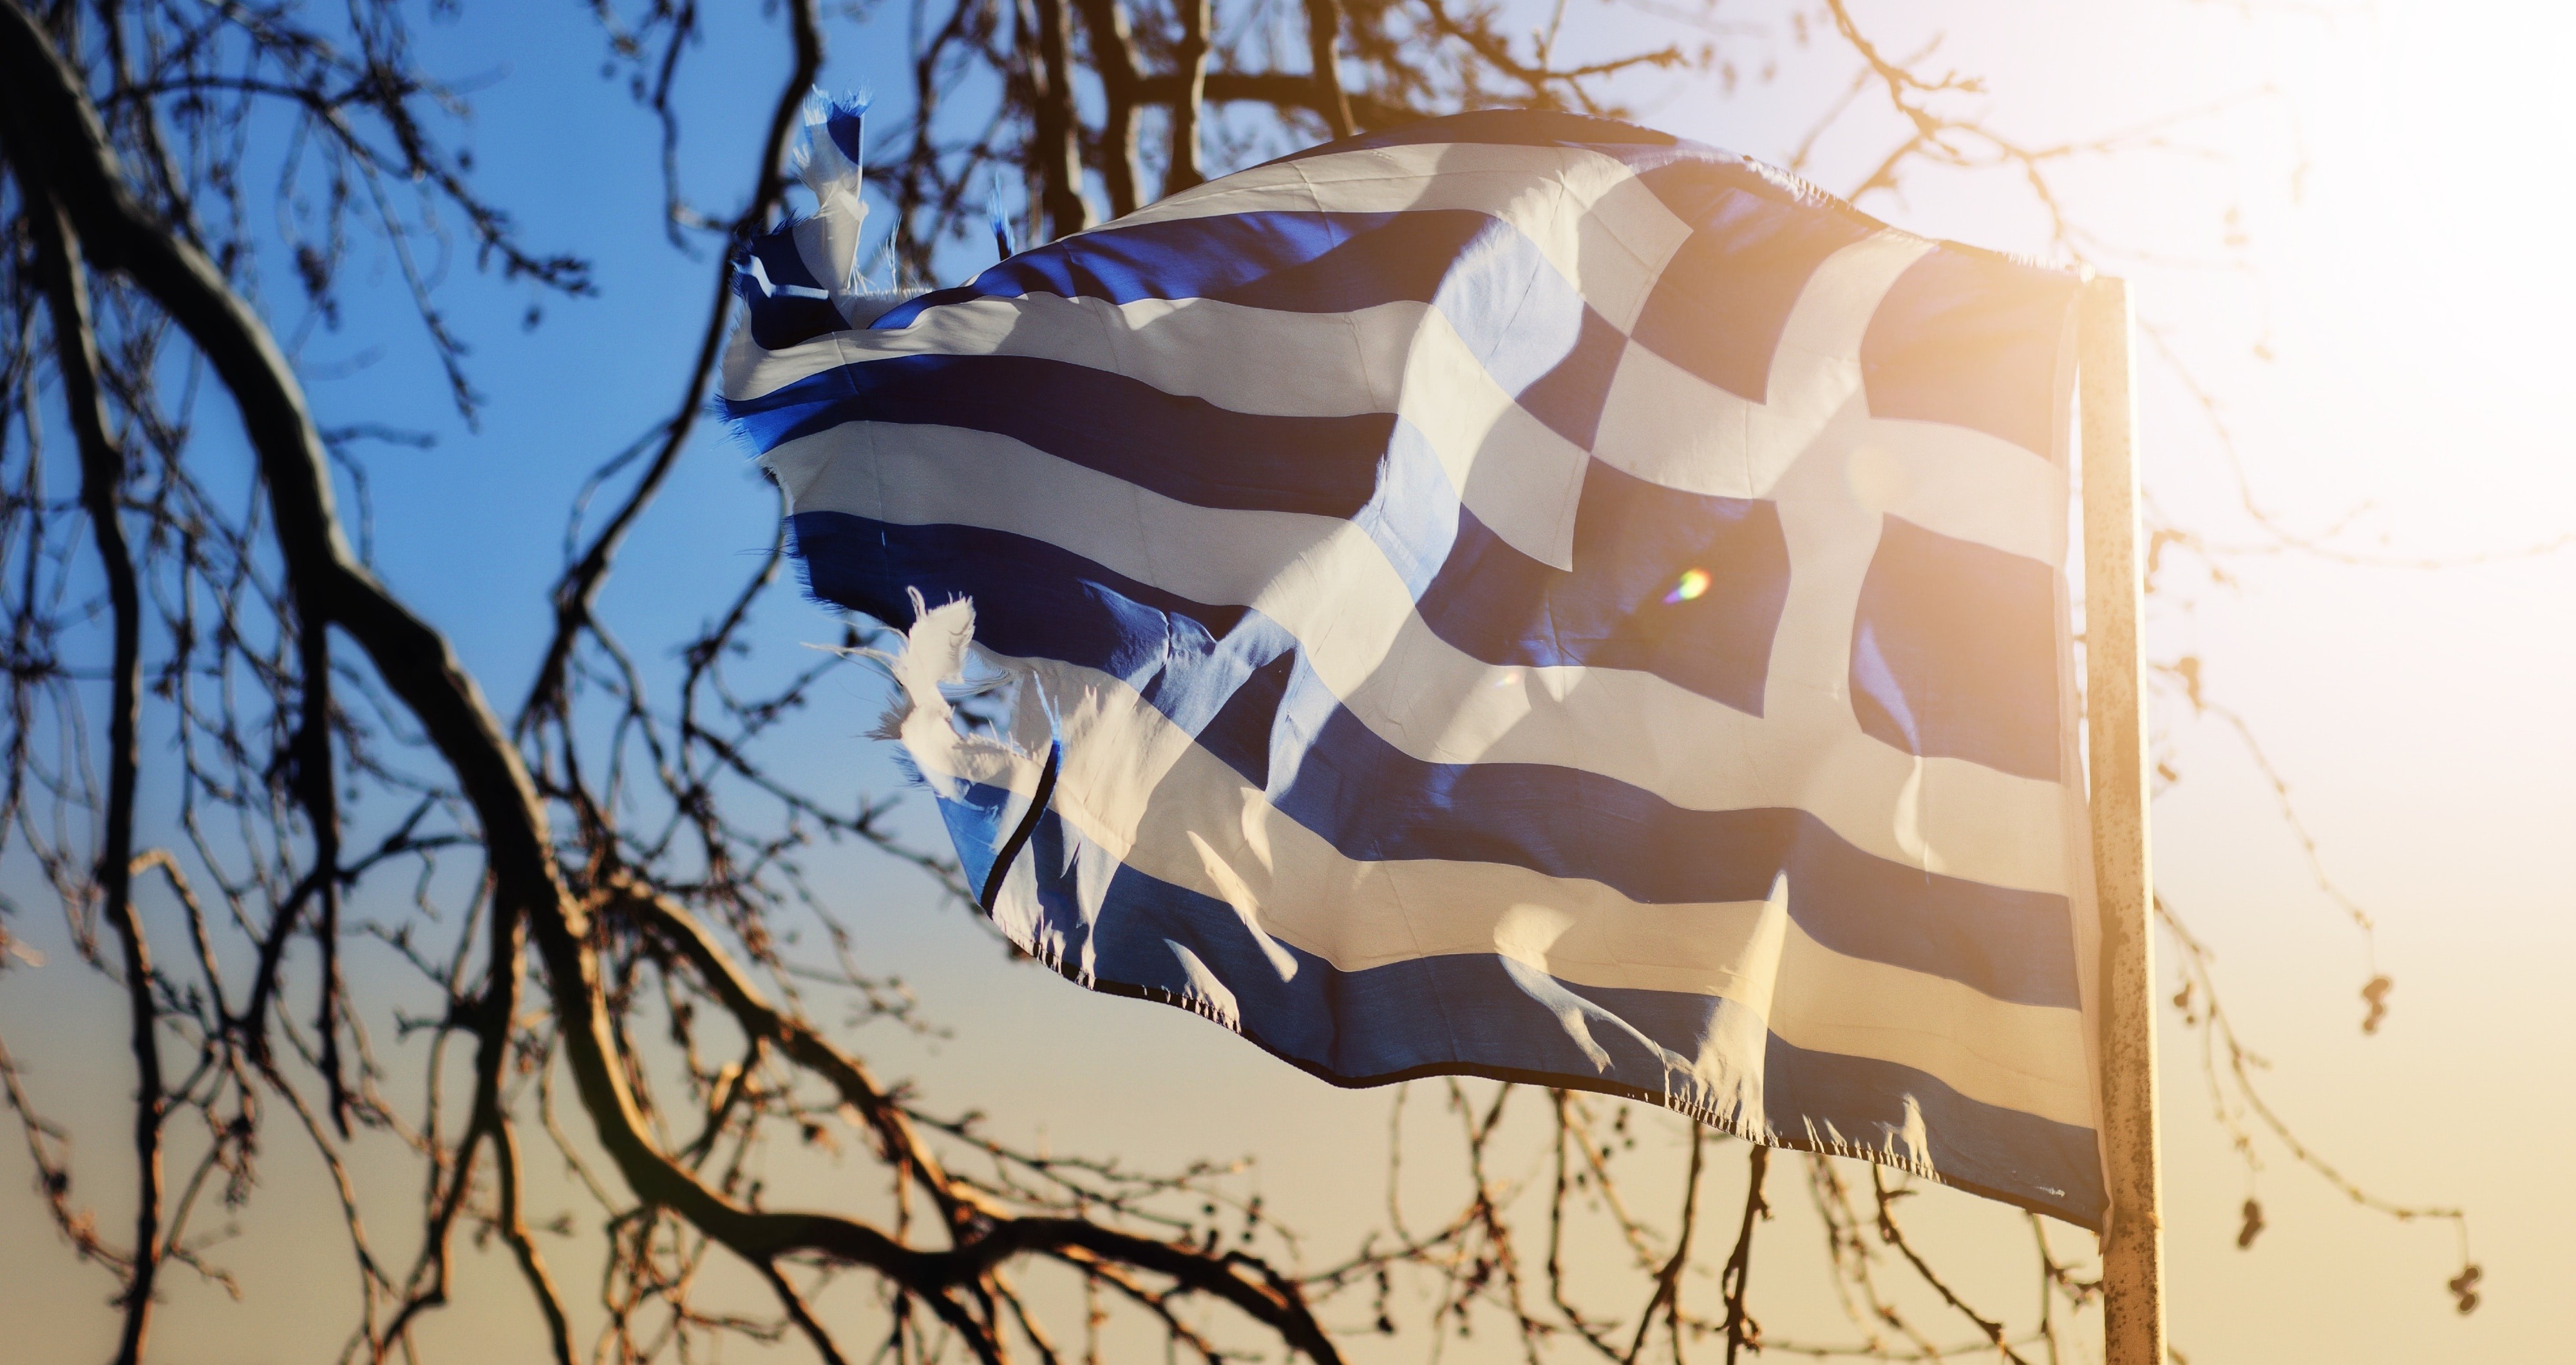 Ψήφος απόδημων Ελλήνων 2019: Θρίλερ με το σχέδιο της ΝΔ και την πρόταση του ΣΥΡΙΖΑ